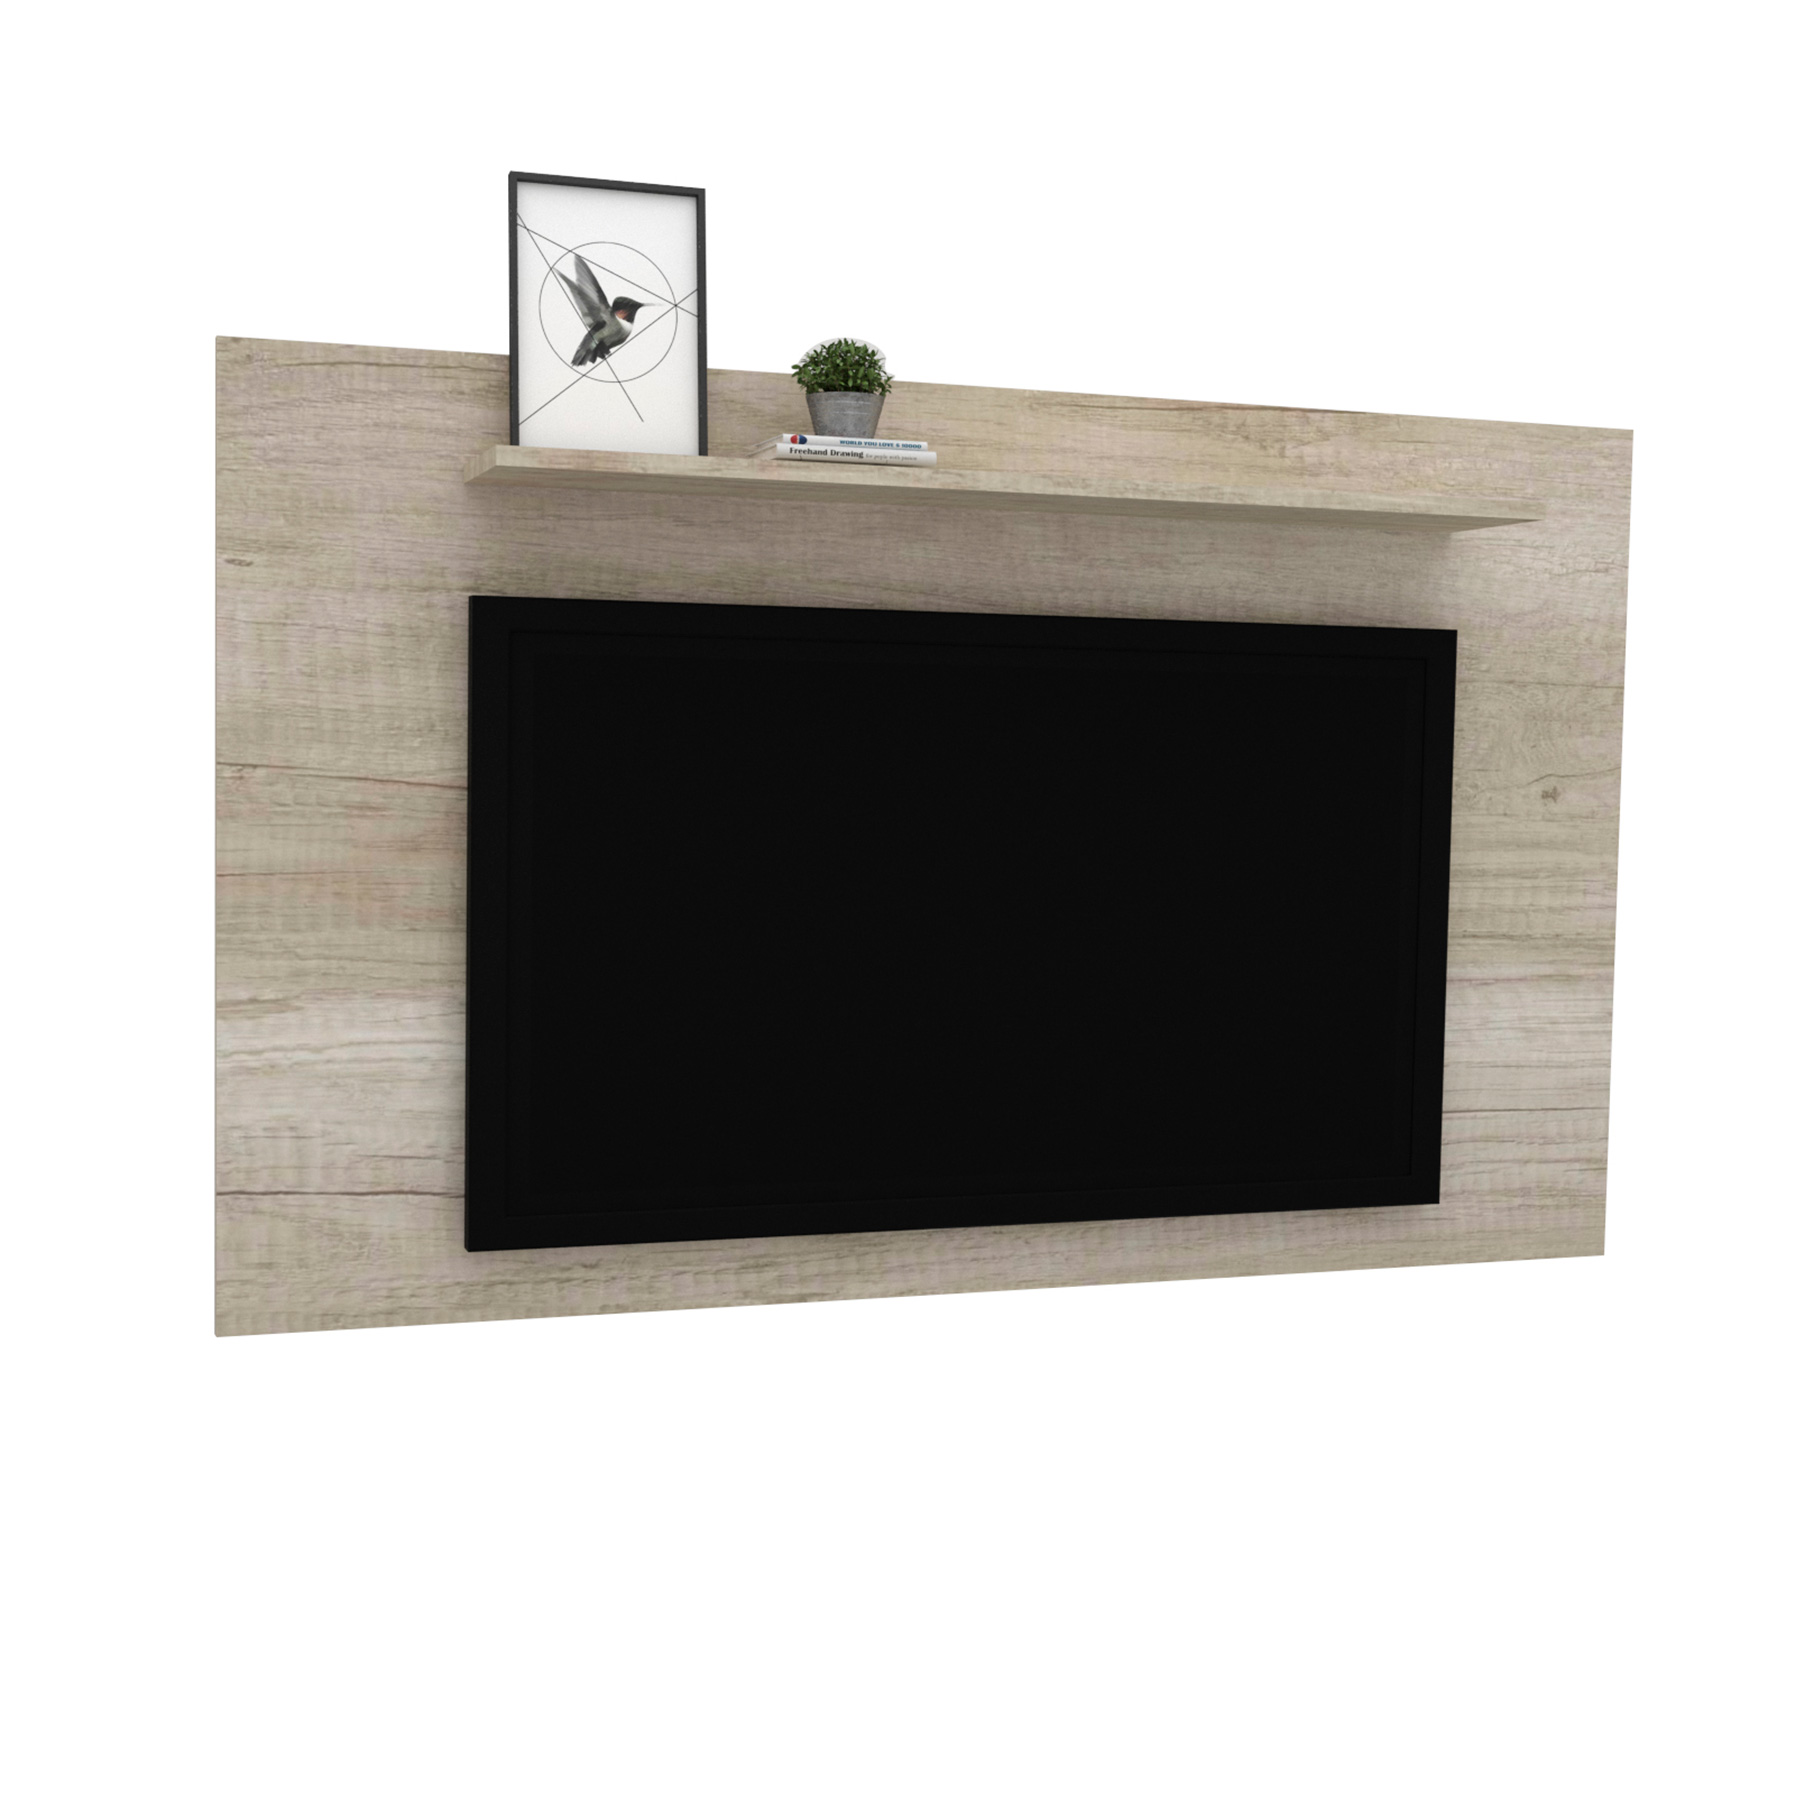 Mueble TV con estante panelado